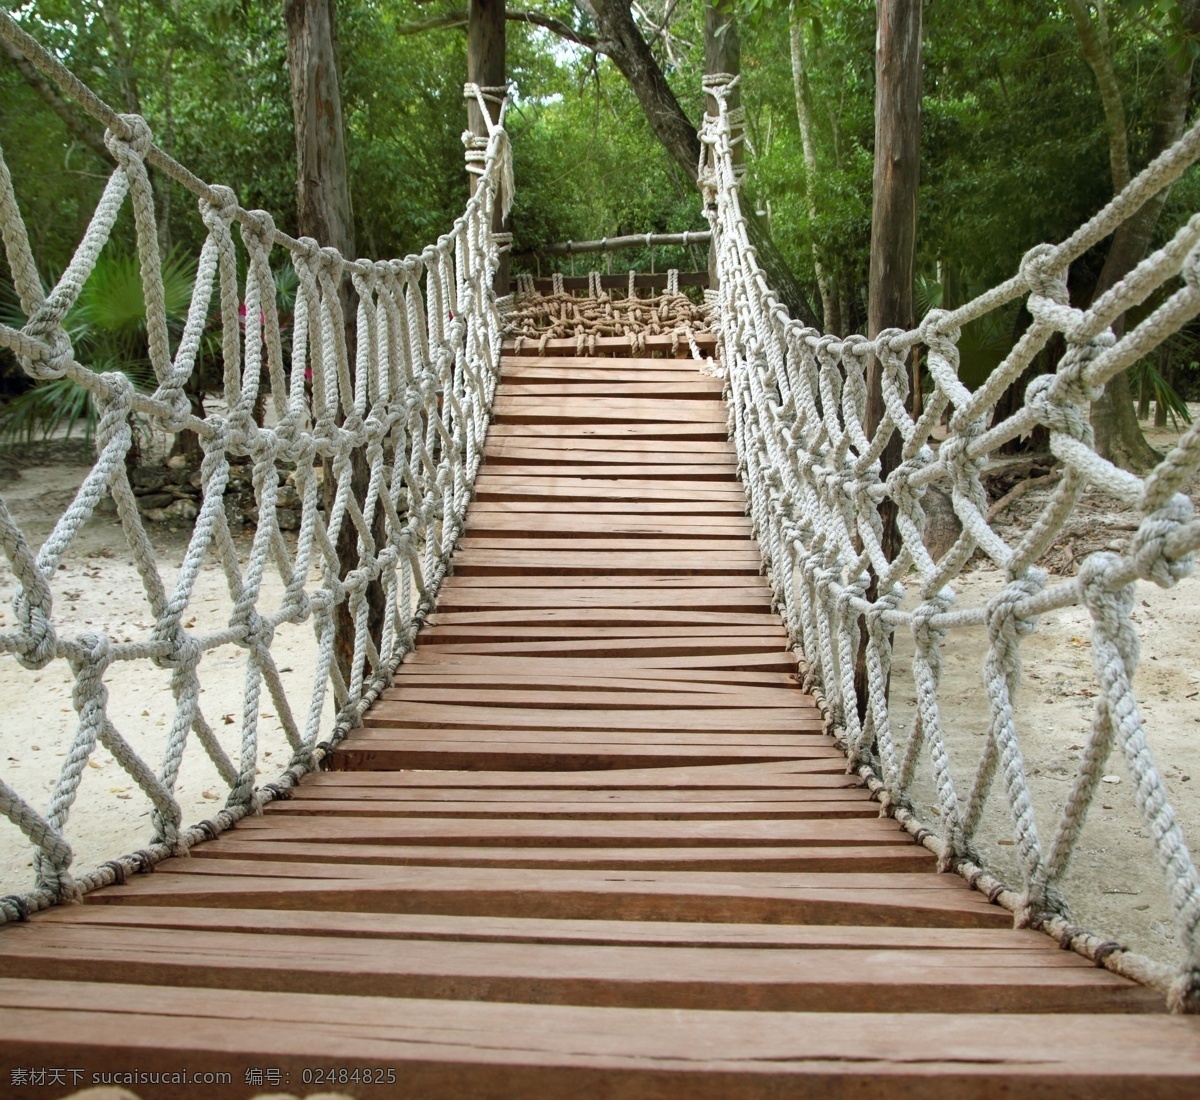 索桥 户外吊桥 木桥 自然风景 风光 木栈桥 自然风光 自然景观